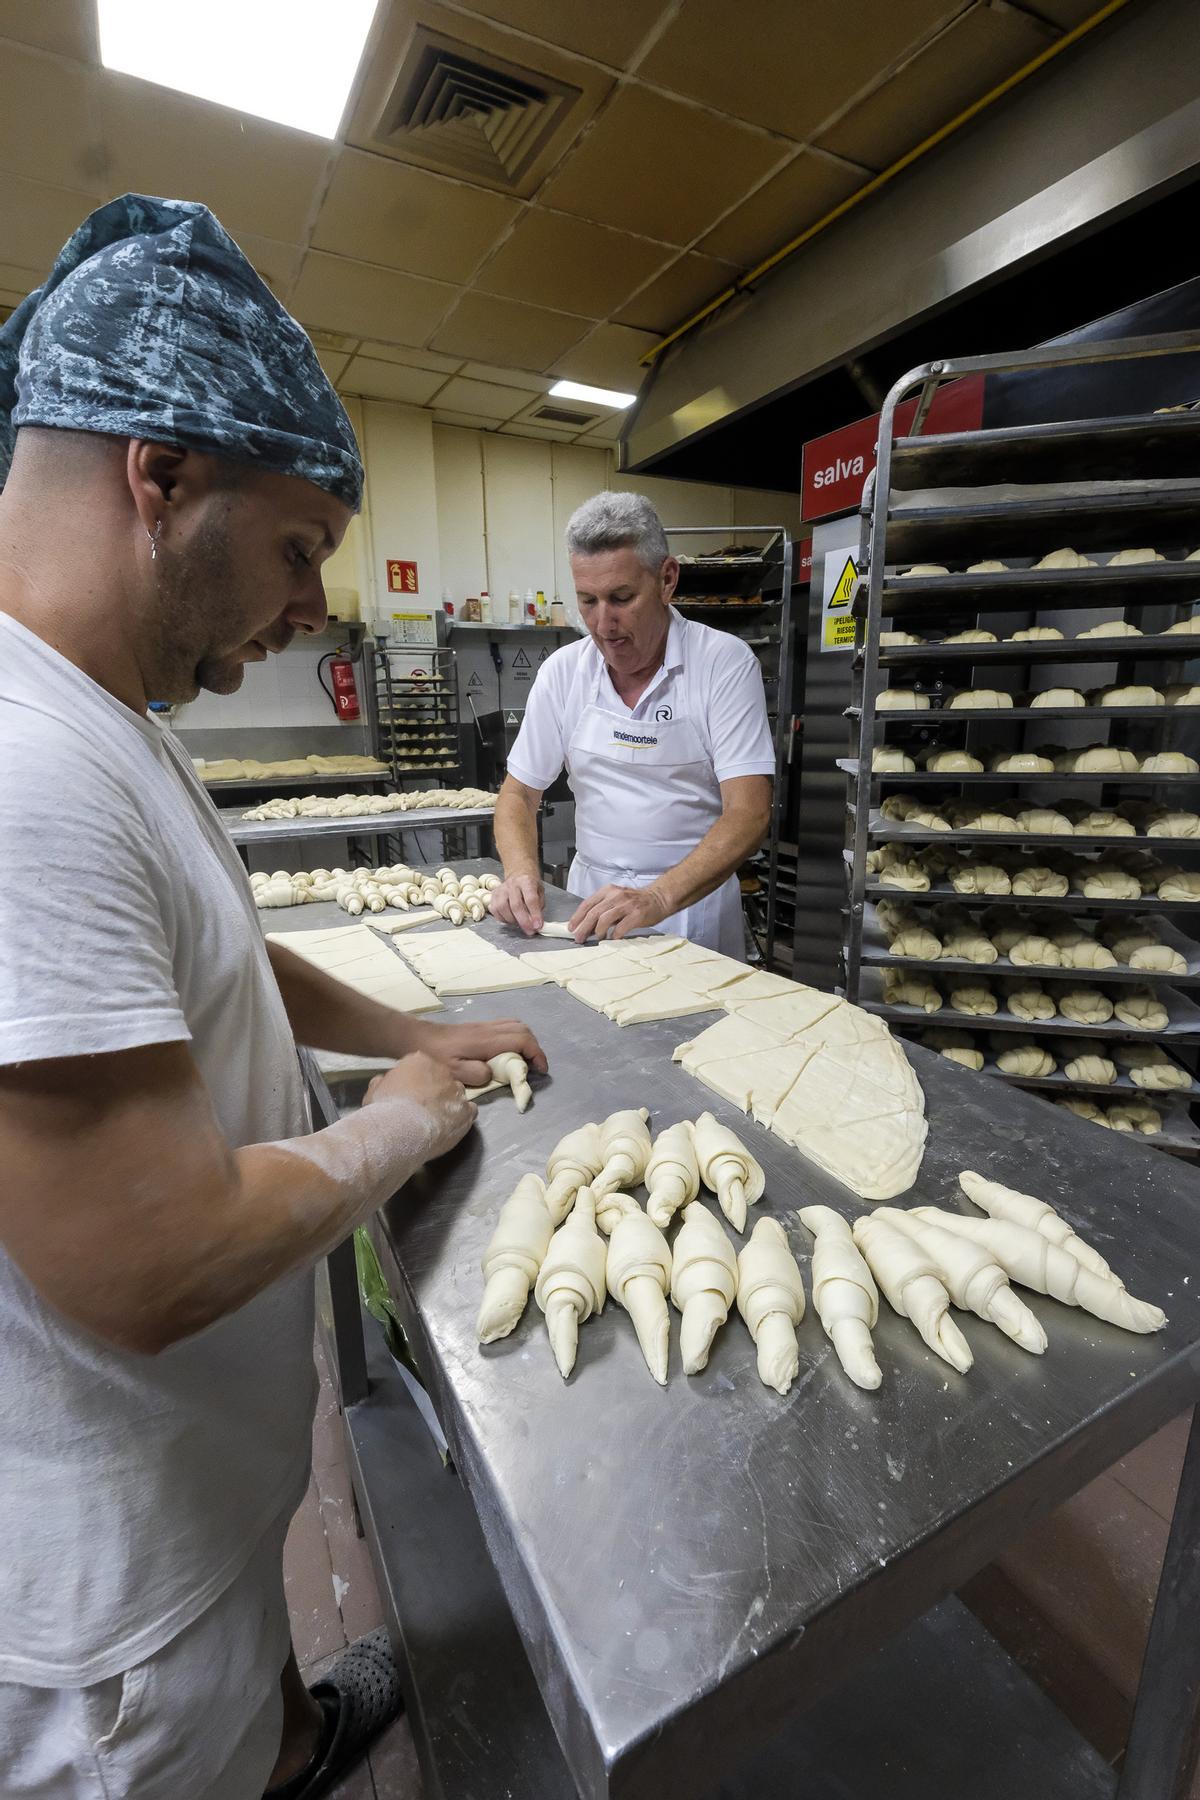 Dos trabajadores de una pastelería de Canarias durante la jornada laboral.